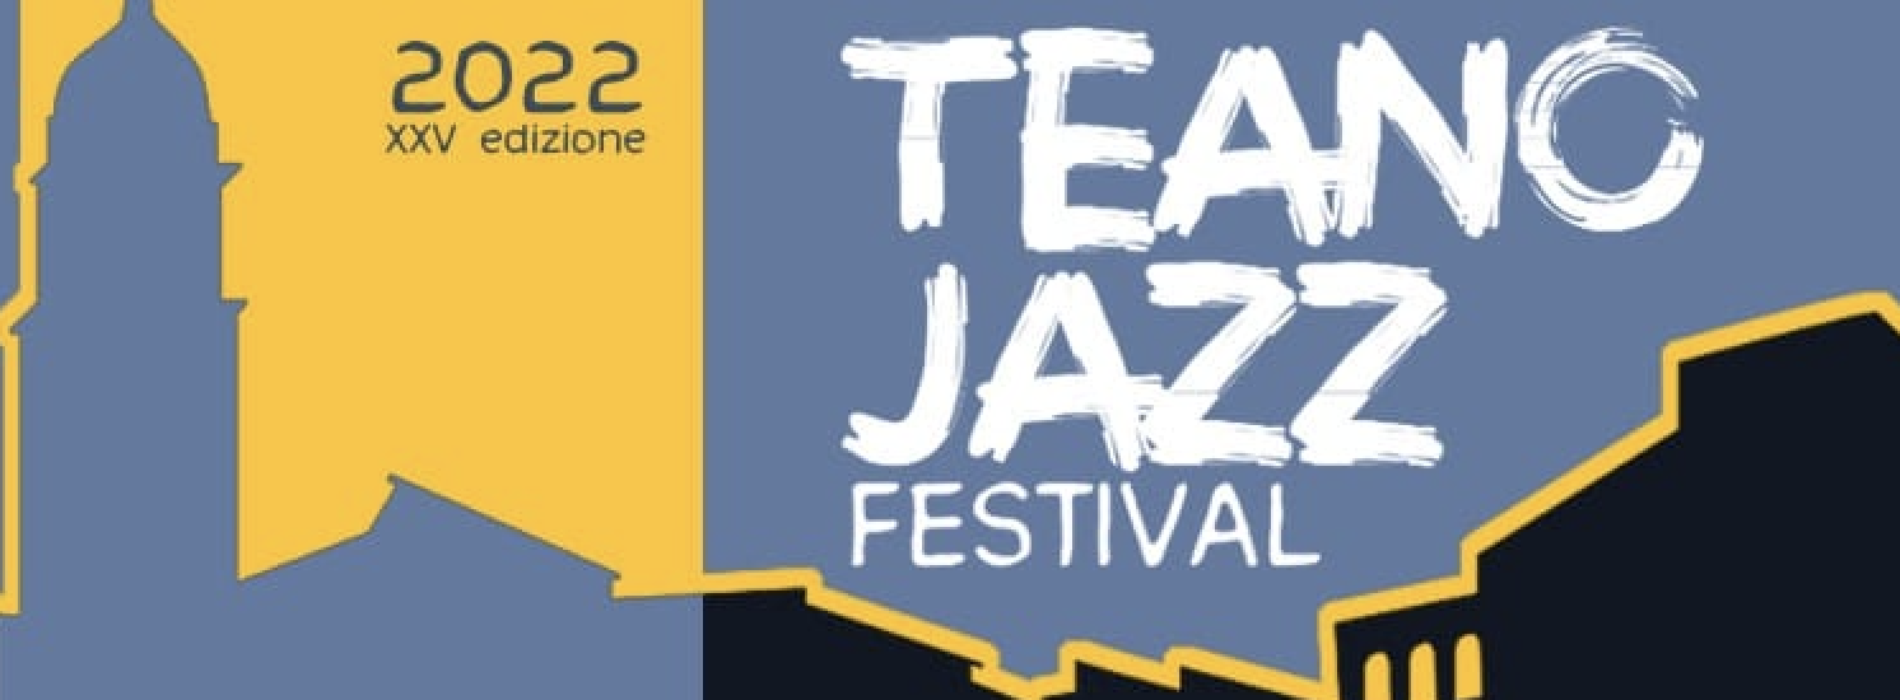 Teano Jazz Festival, 25esima edizione al via dall’otto dicembre